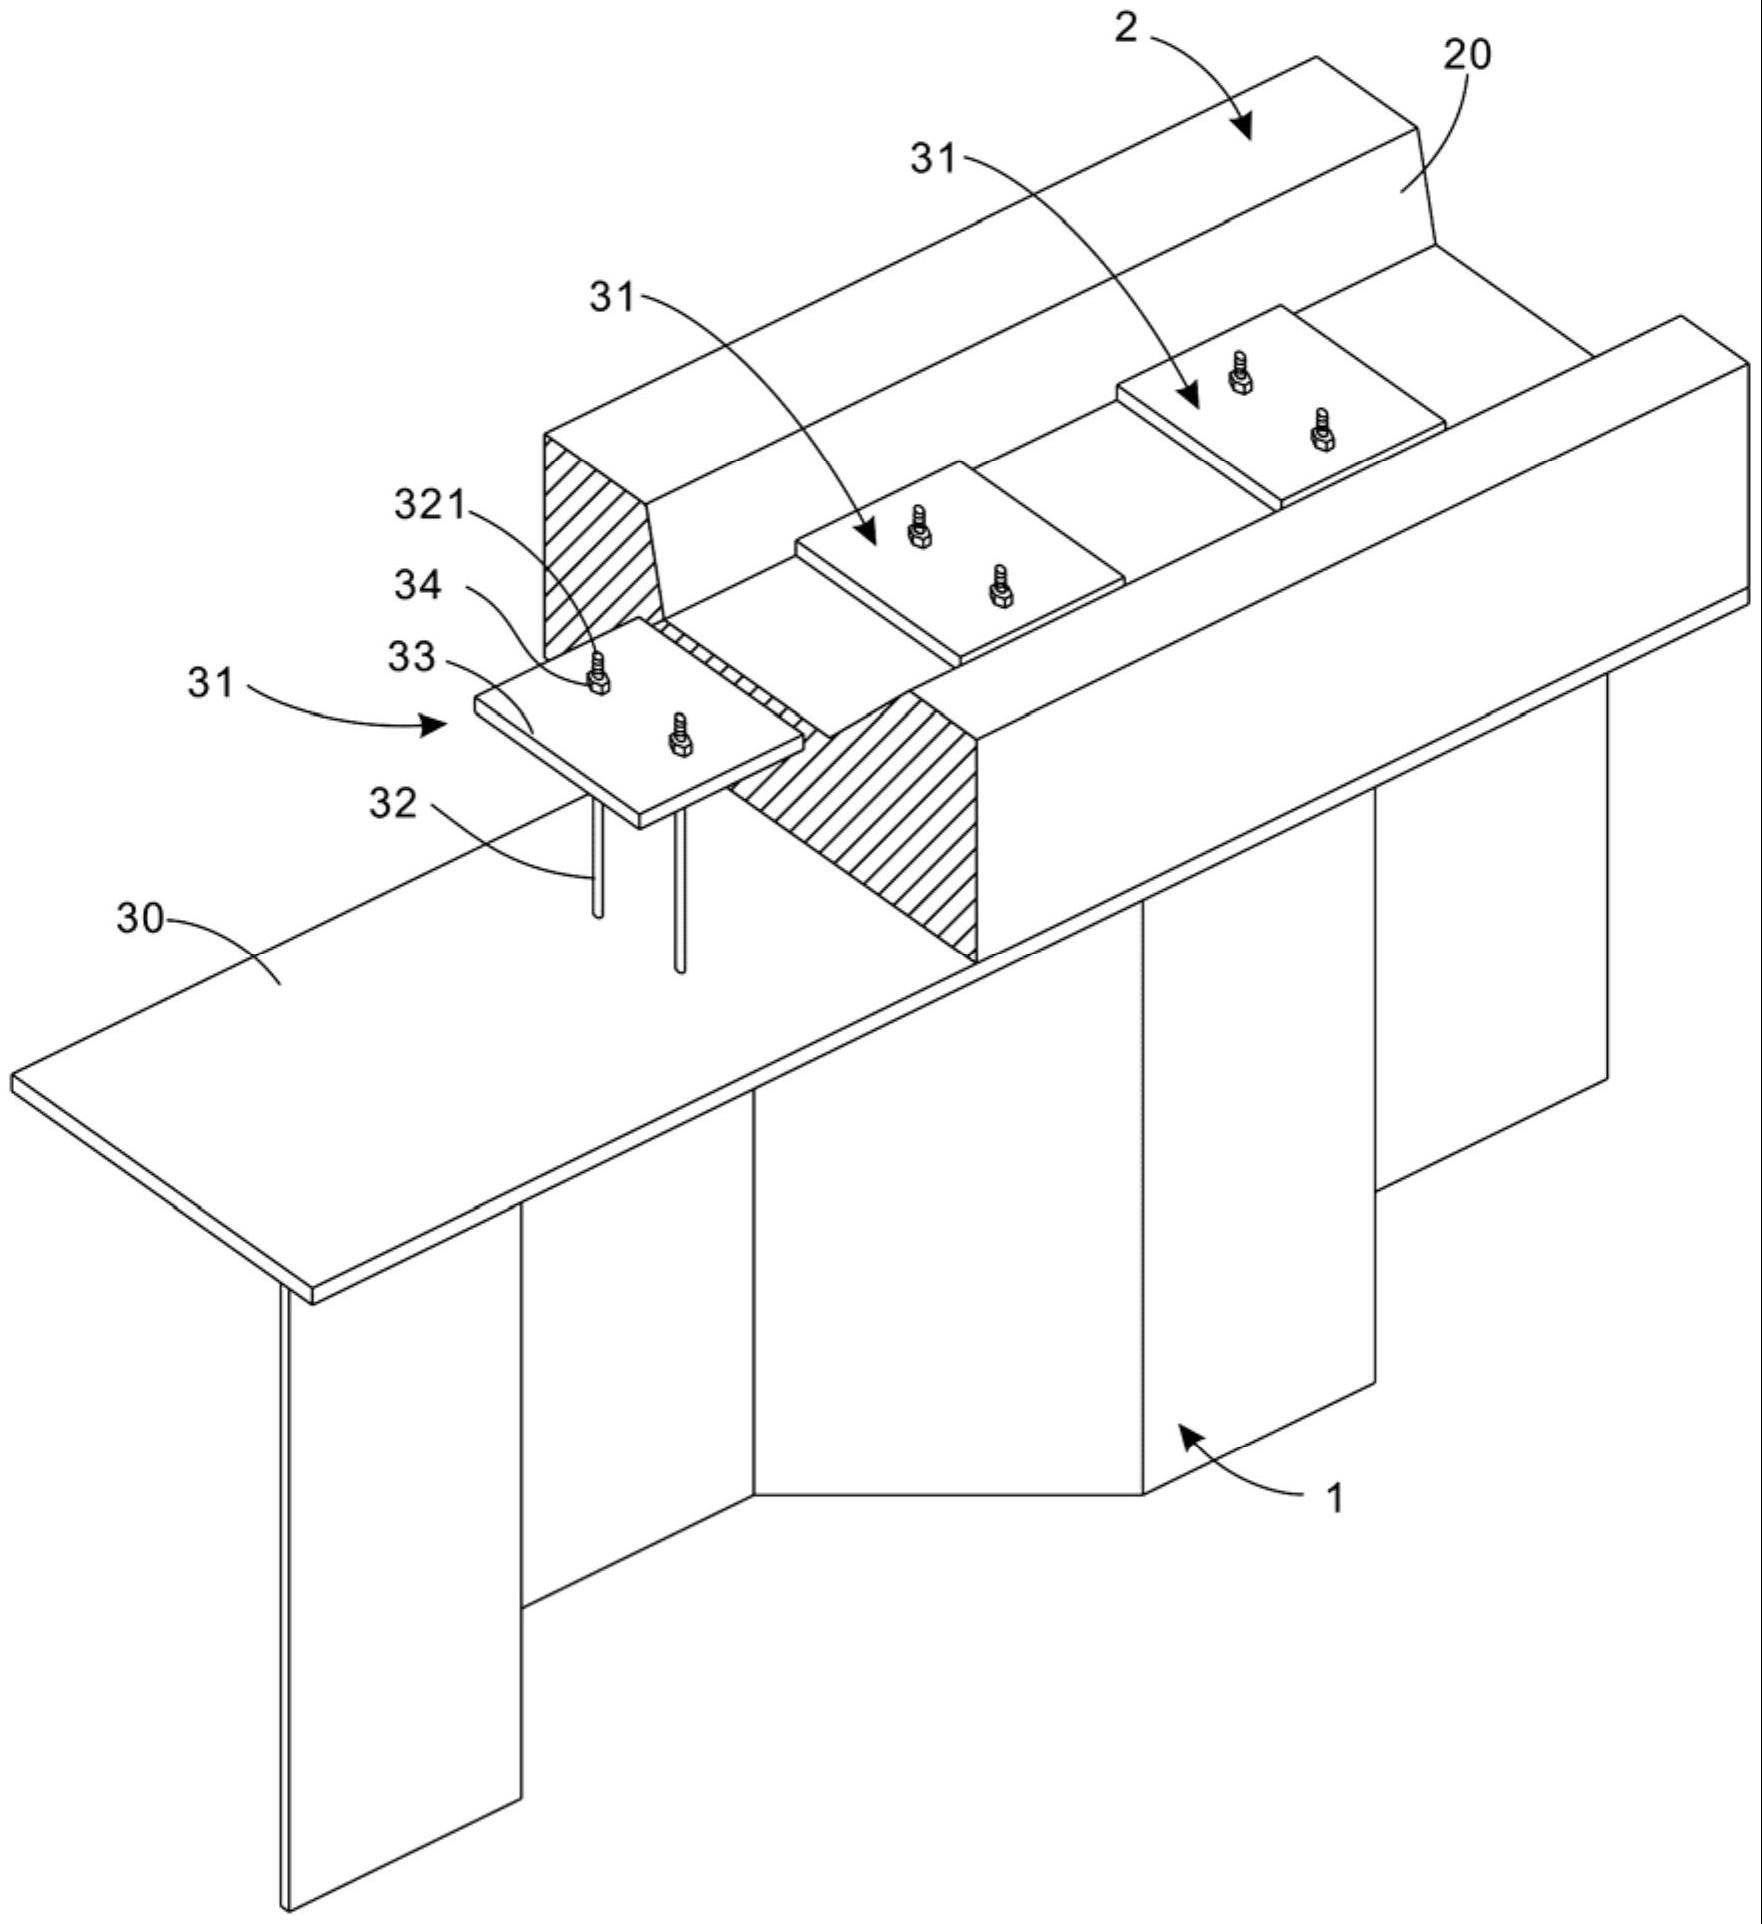 连接结构及对应的波形钢腹板组合箱梁的制作方法